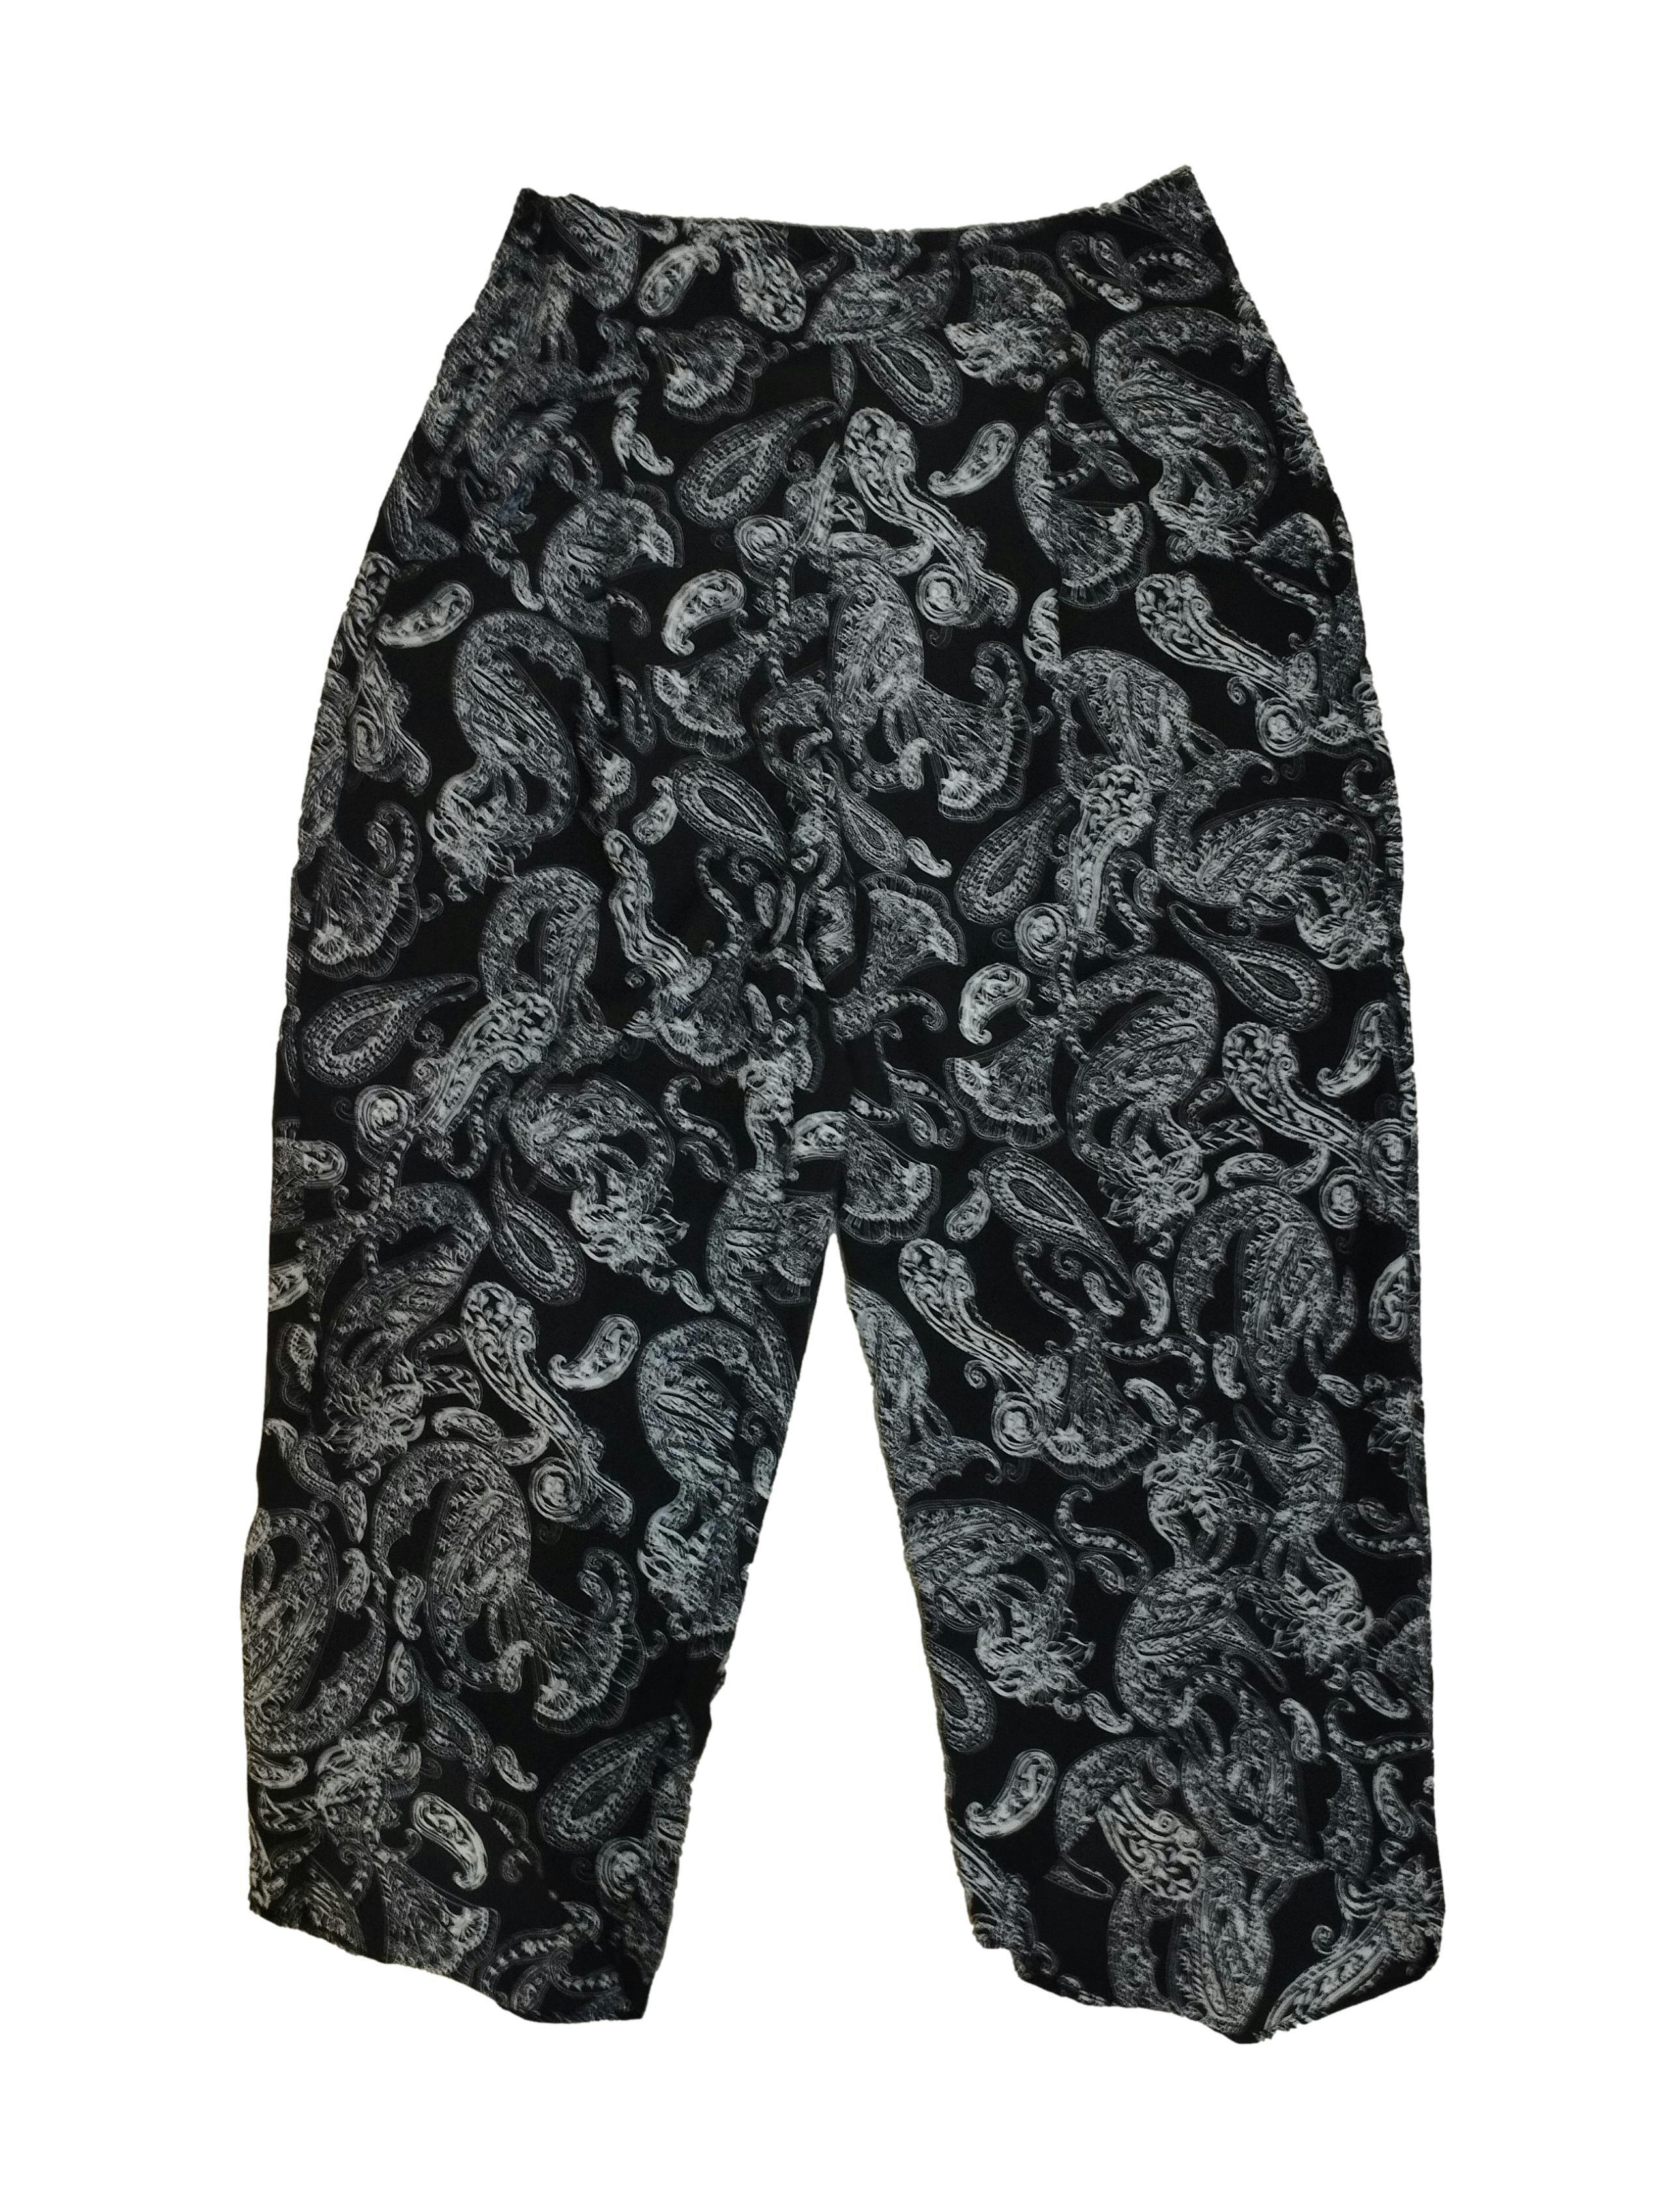 Pantalón negro con diseño paisley y floral en tono blanco, cierre lateral, bolsillos delanteros y abertura en las piernas. Cintura: 66 cm, Tiro: 33 cm, Largo: 86 cm